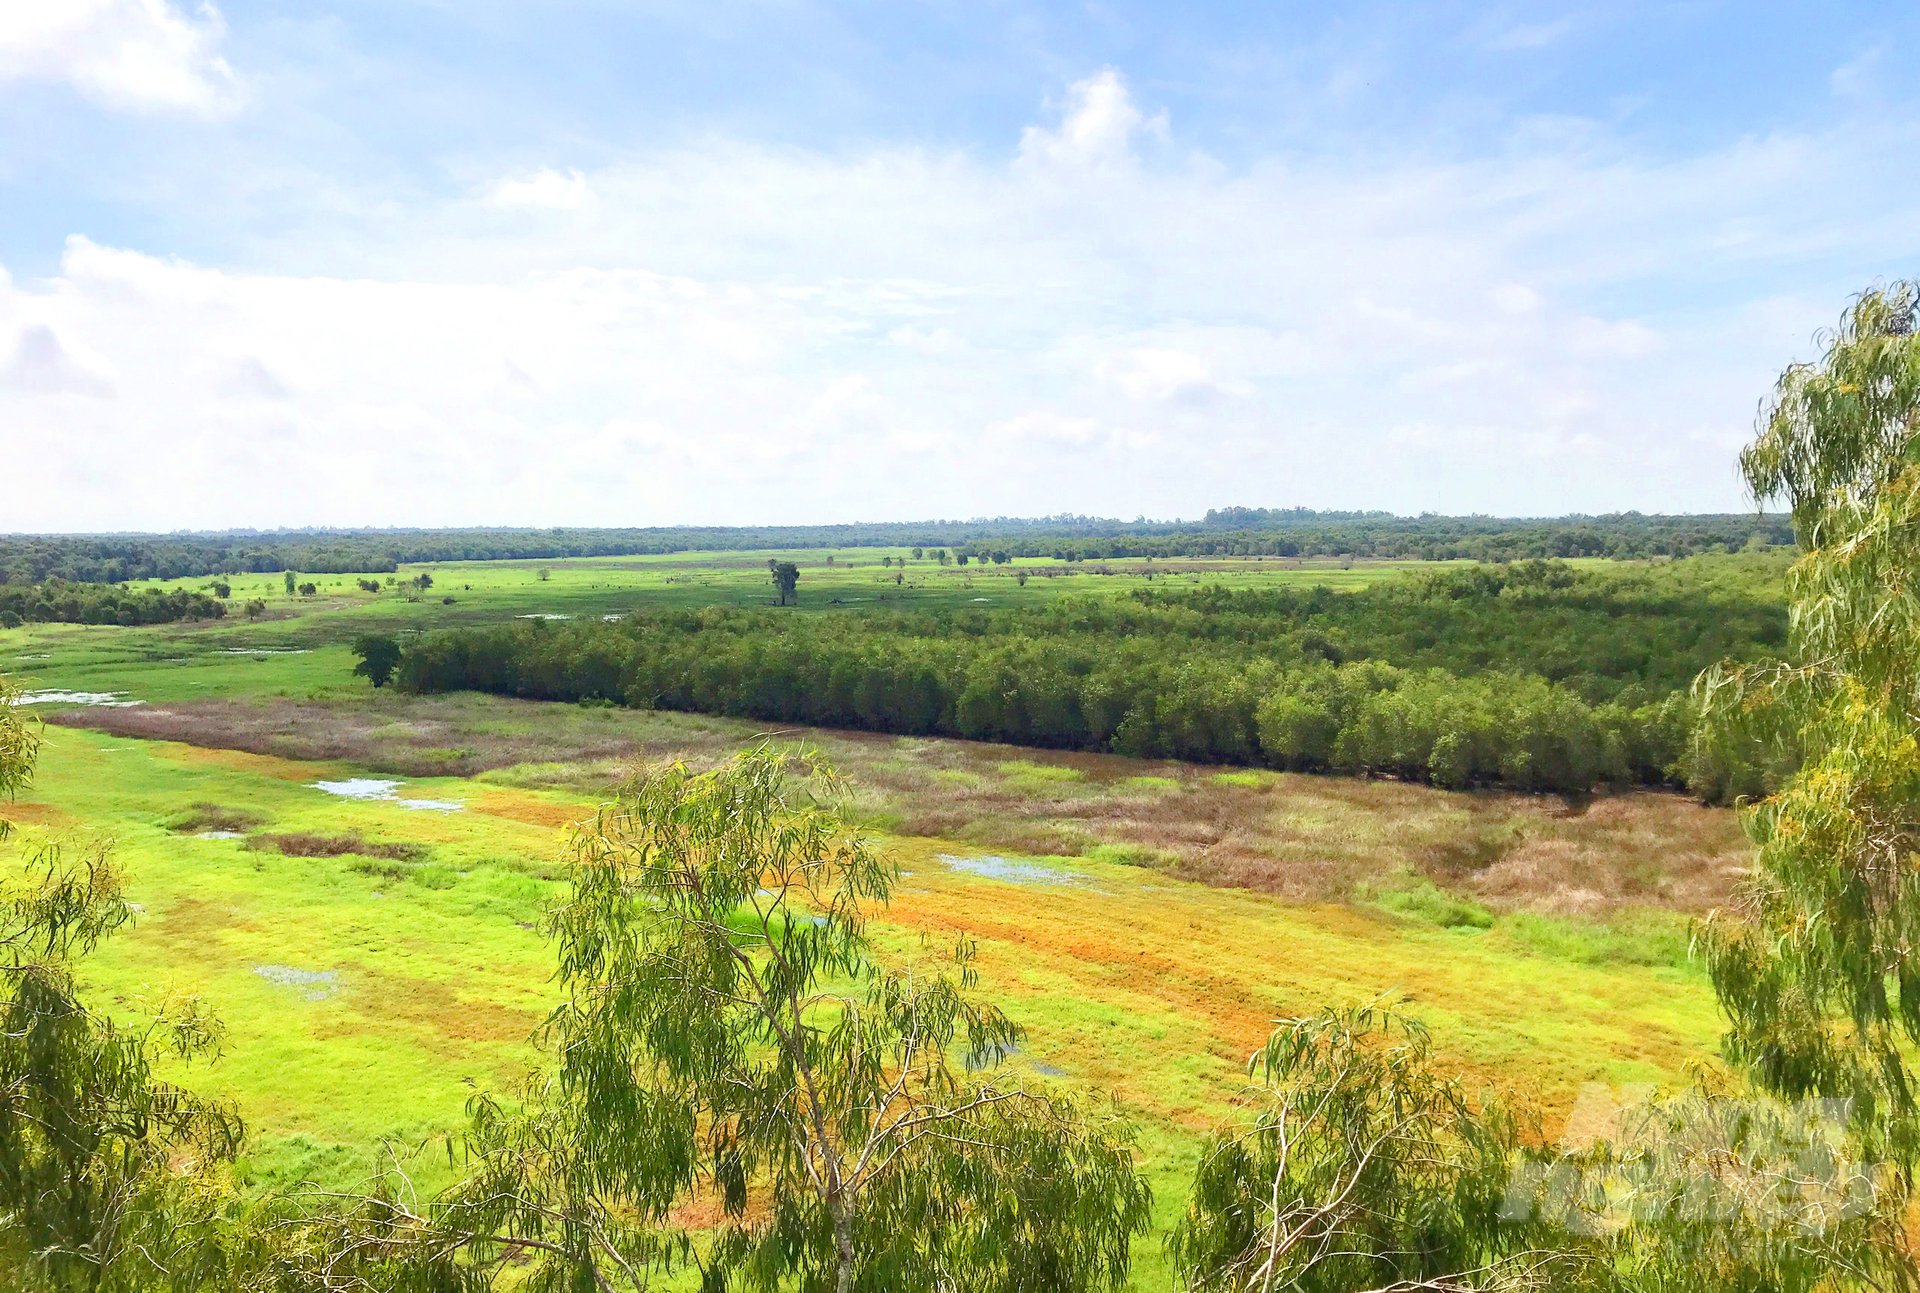 Hiện nay, UBND tỉnh Đồng Tháp đang quy hoạch khu A4 thuộc Vườn Quốc gia Tràm Chim là nơi thả nuôi sếu ra tự nhiên. Ảnh: Lê Hoàng Vũ.